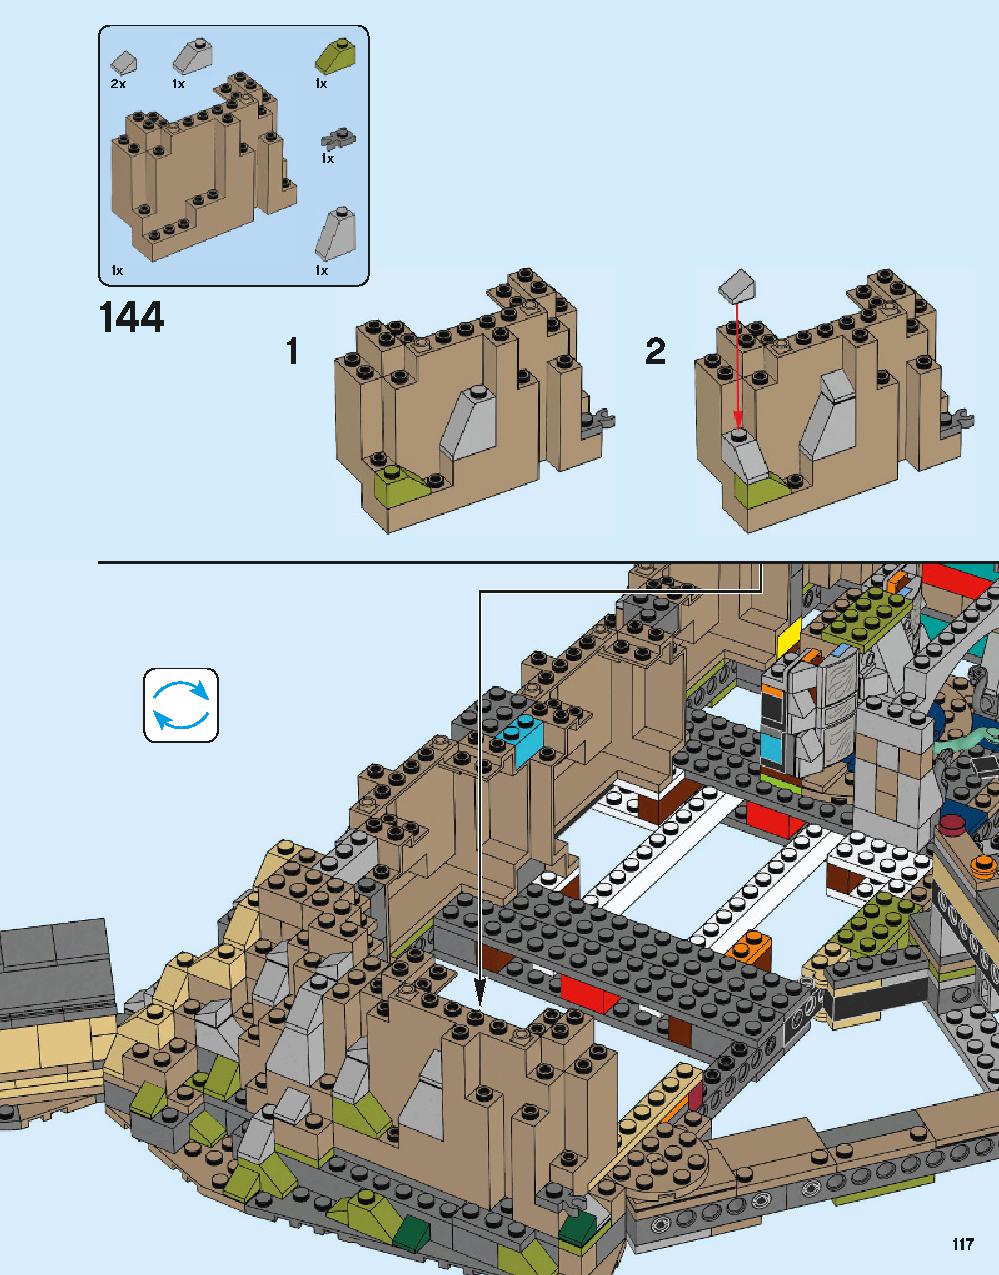 ホグワーツ城 71043 レゴの商品情報 レゴの説明書・組立方法 117 page